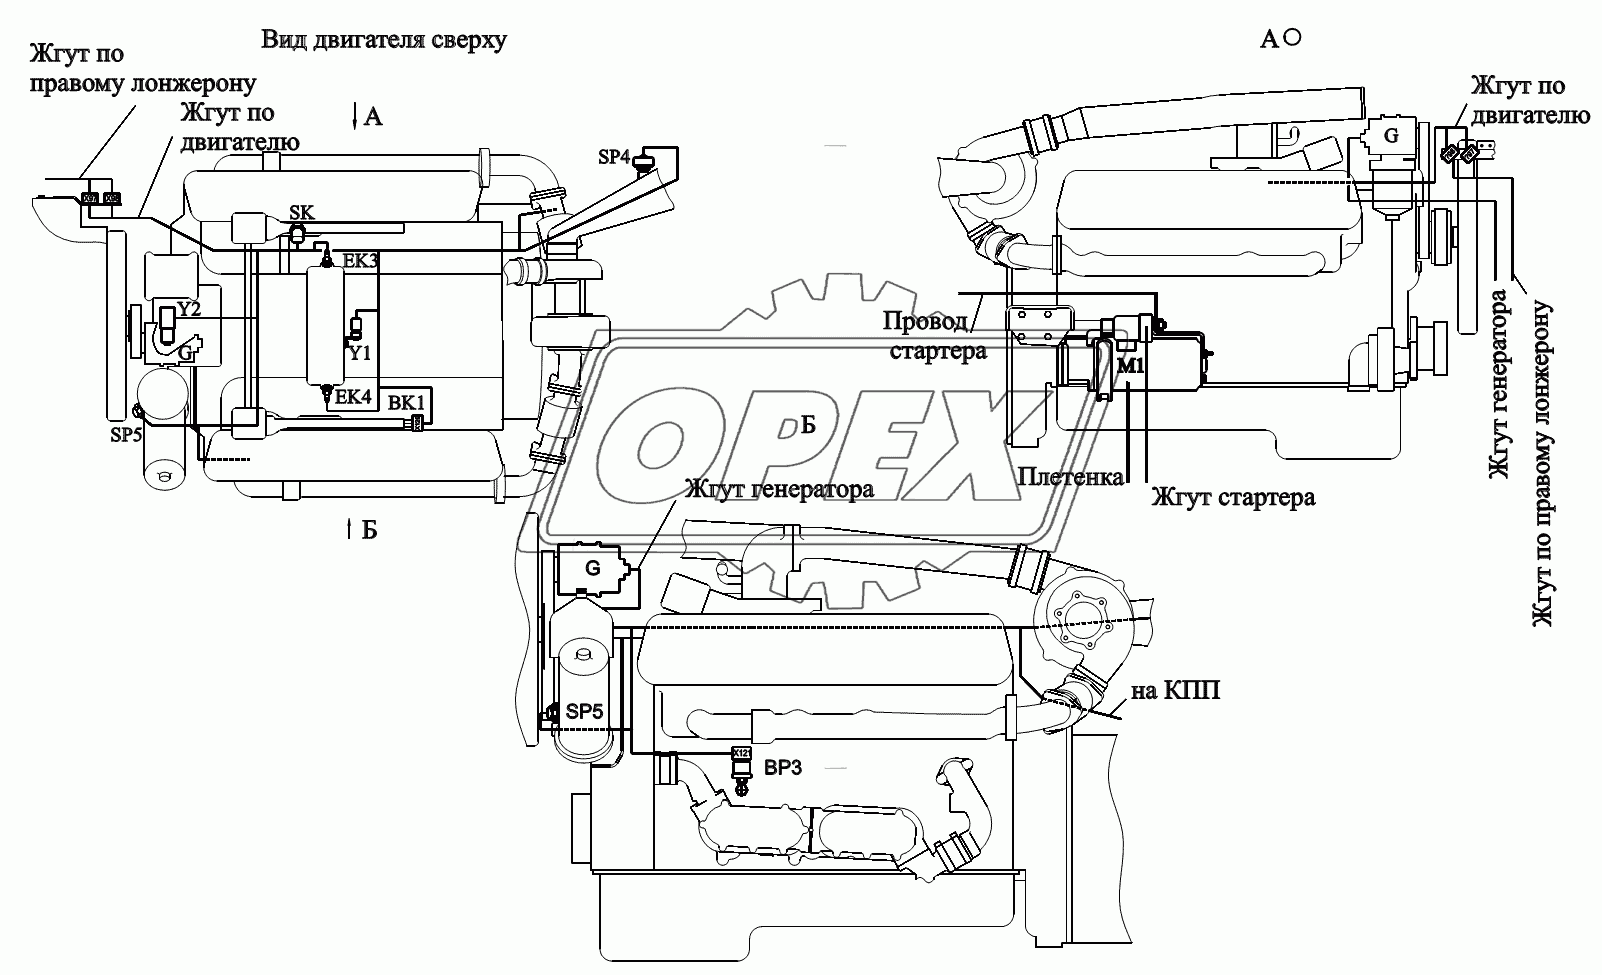 Расположение разъемов и элементов электрооборудования на двигателе ЯМЗ-6582.10